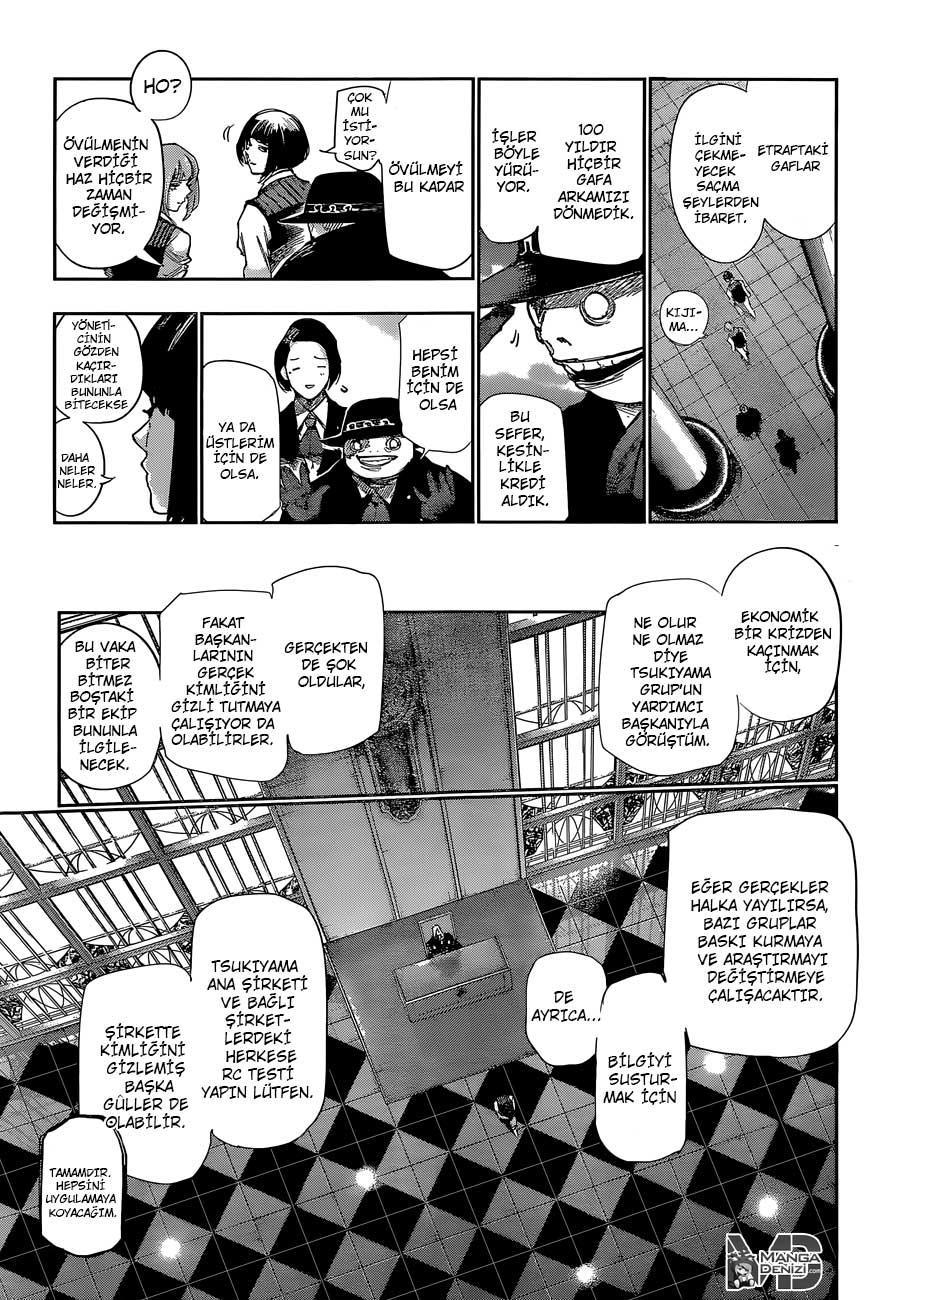 Tokyo Ghoul: RE mangasının 045 bölümünün 4. sayfasını okuyorsunuz.